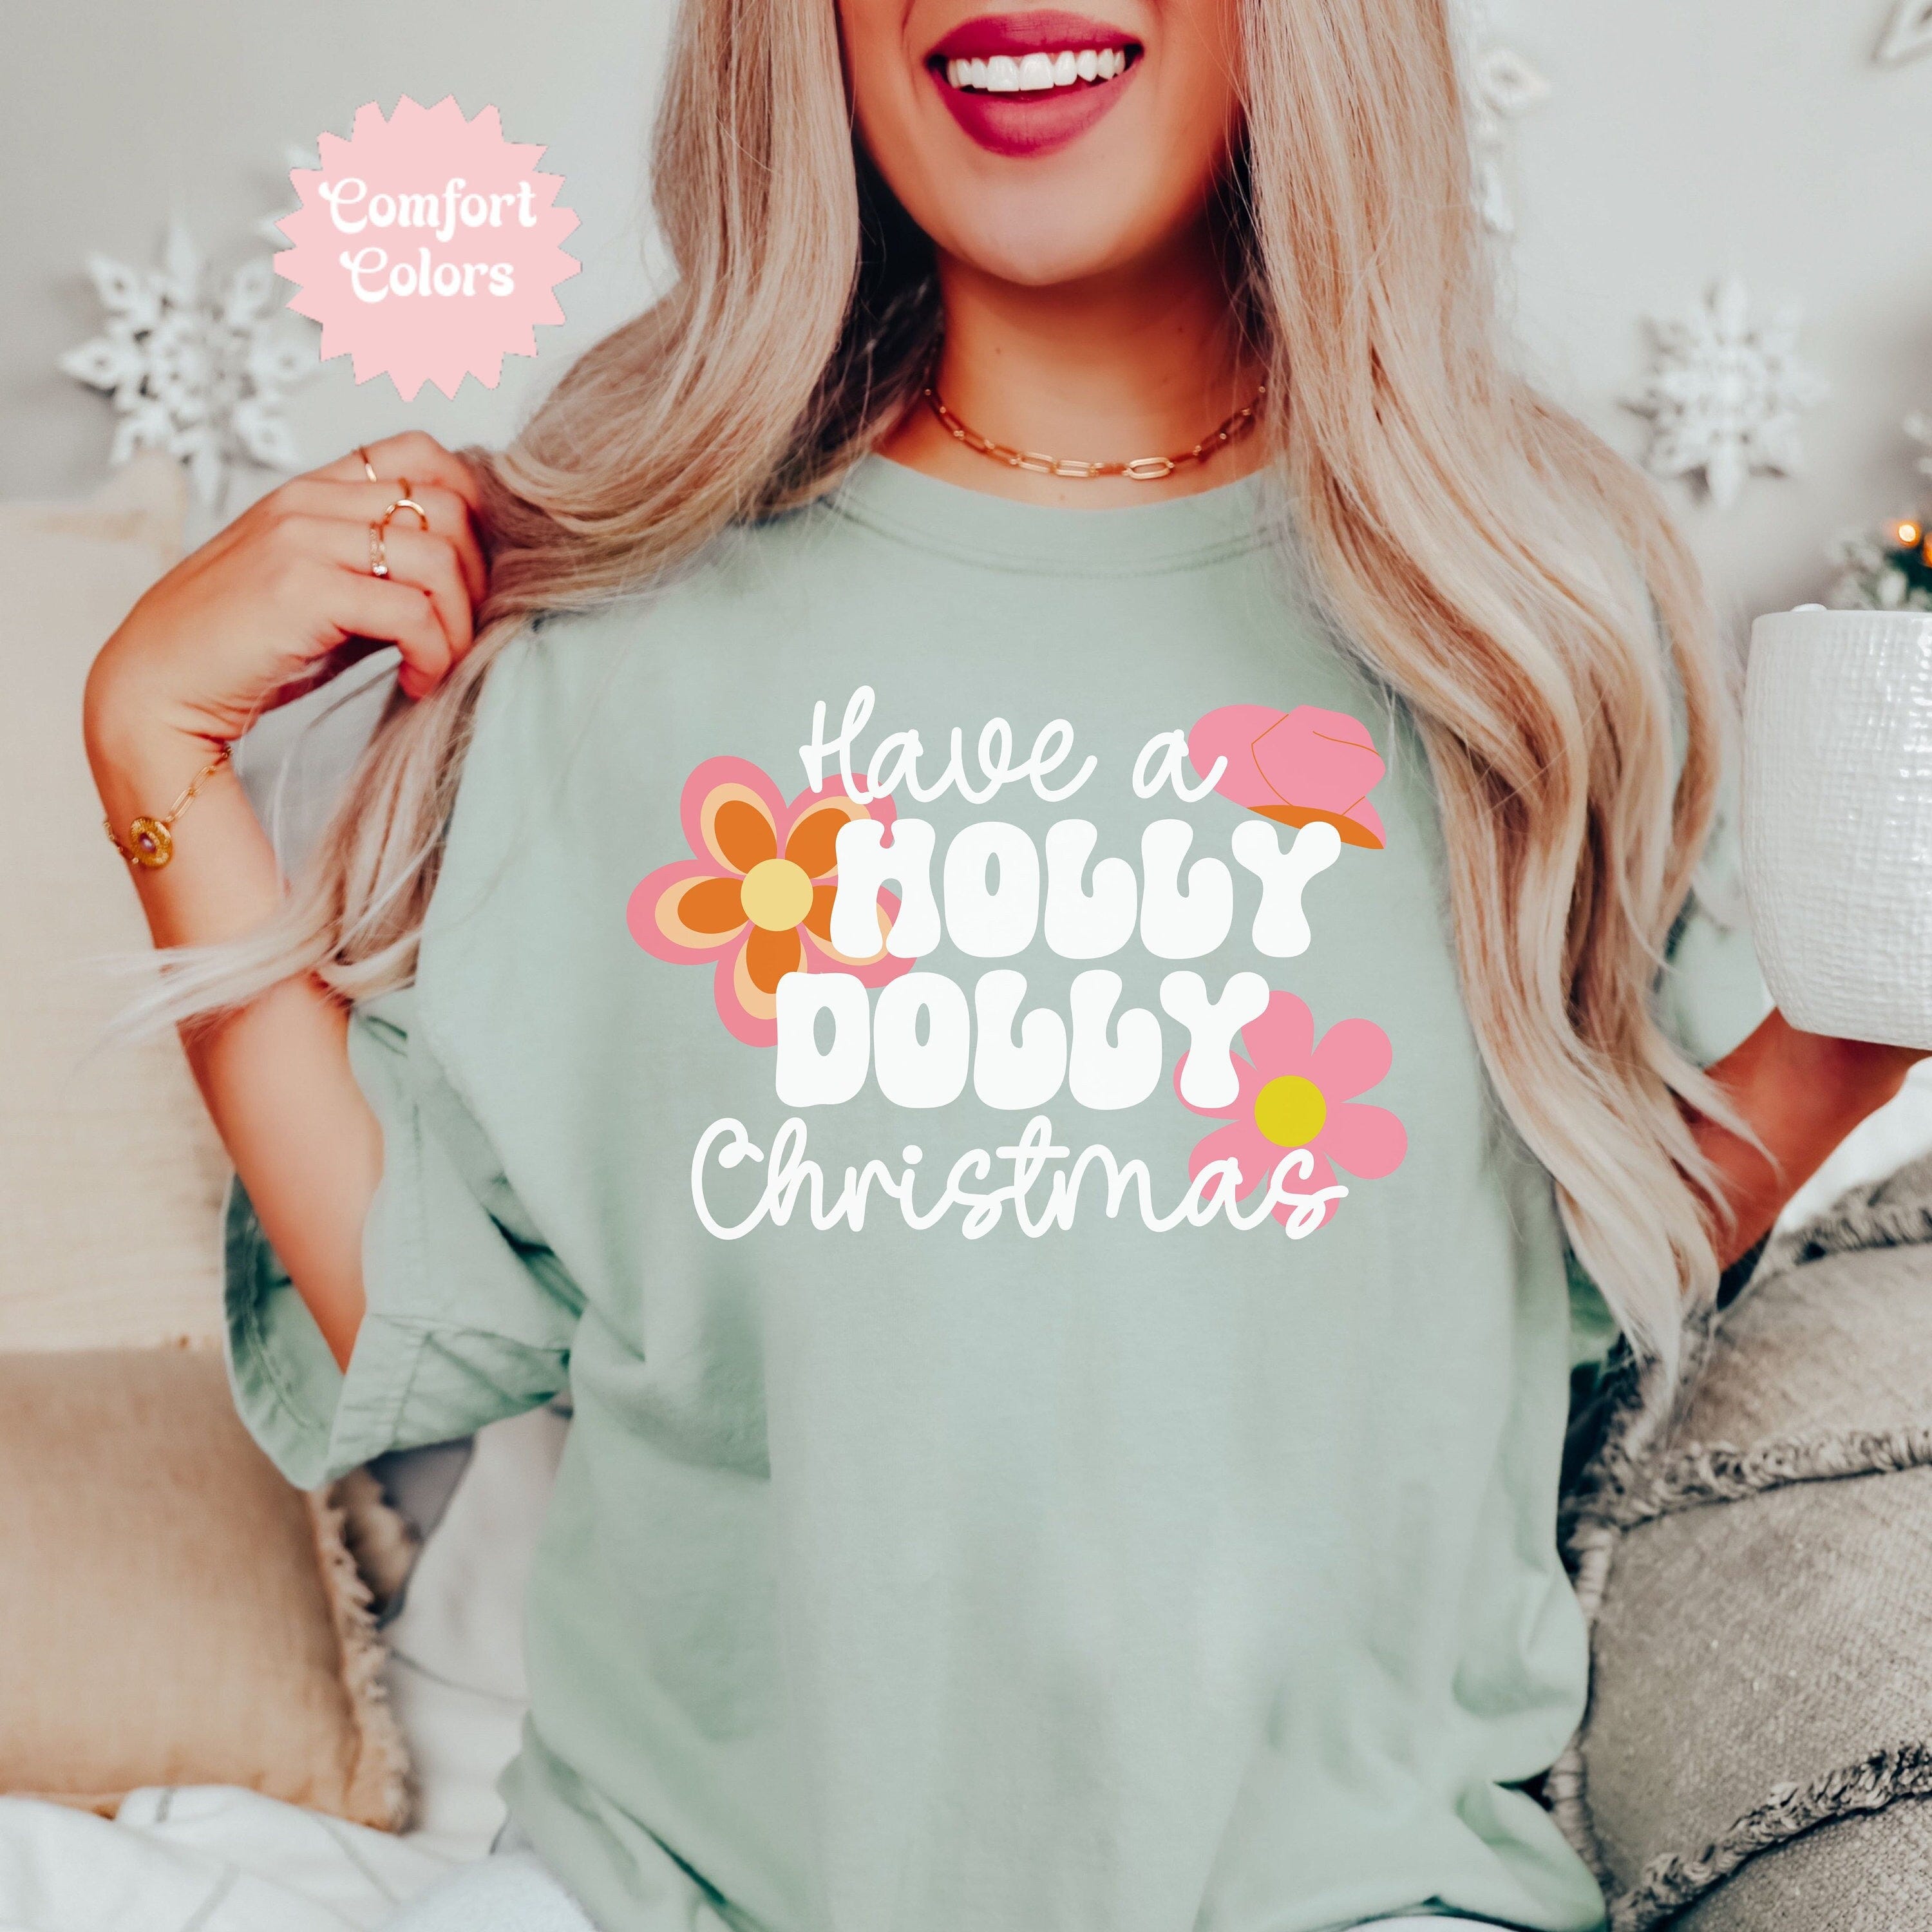 Holly Dolly Christmas Shirt, Christmas T-Shirt, Family Christmas Shirt, Best Friend Christmas, Comfort Colors Tee, Christmas Gift